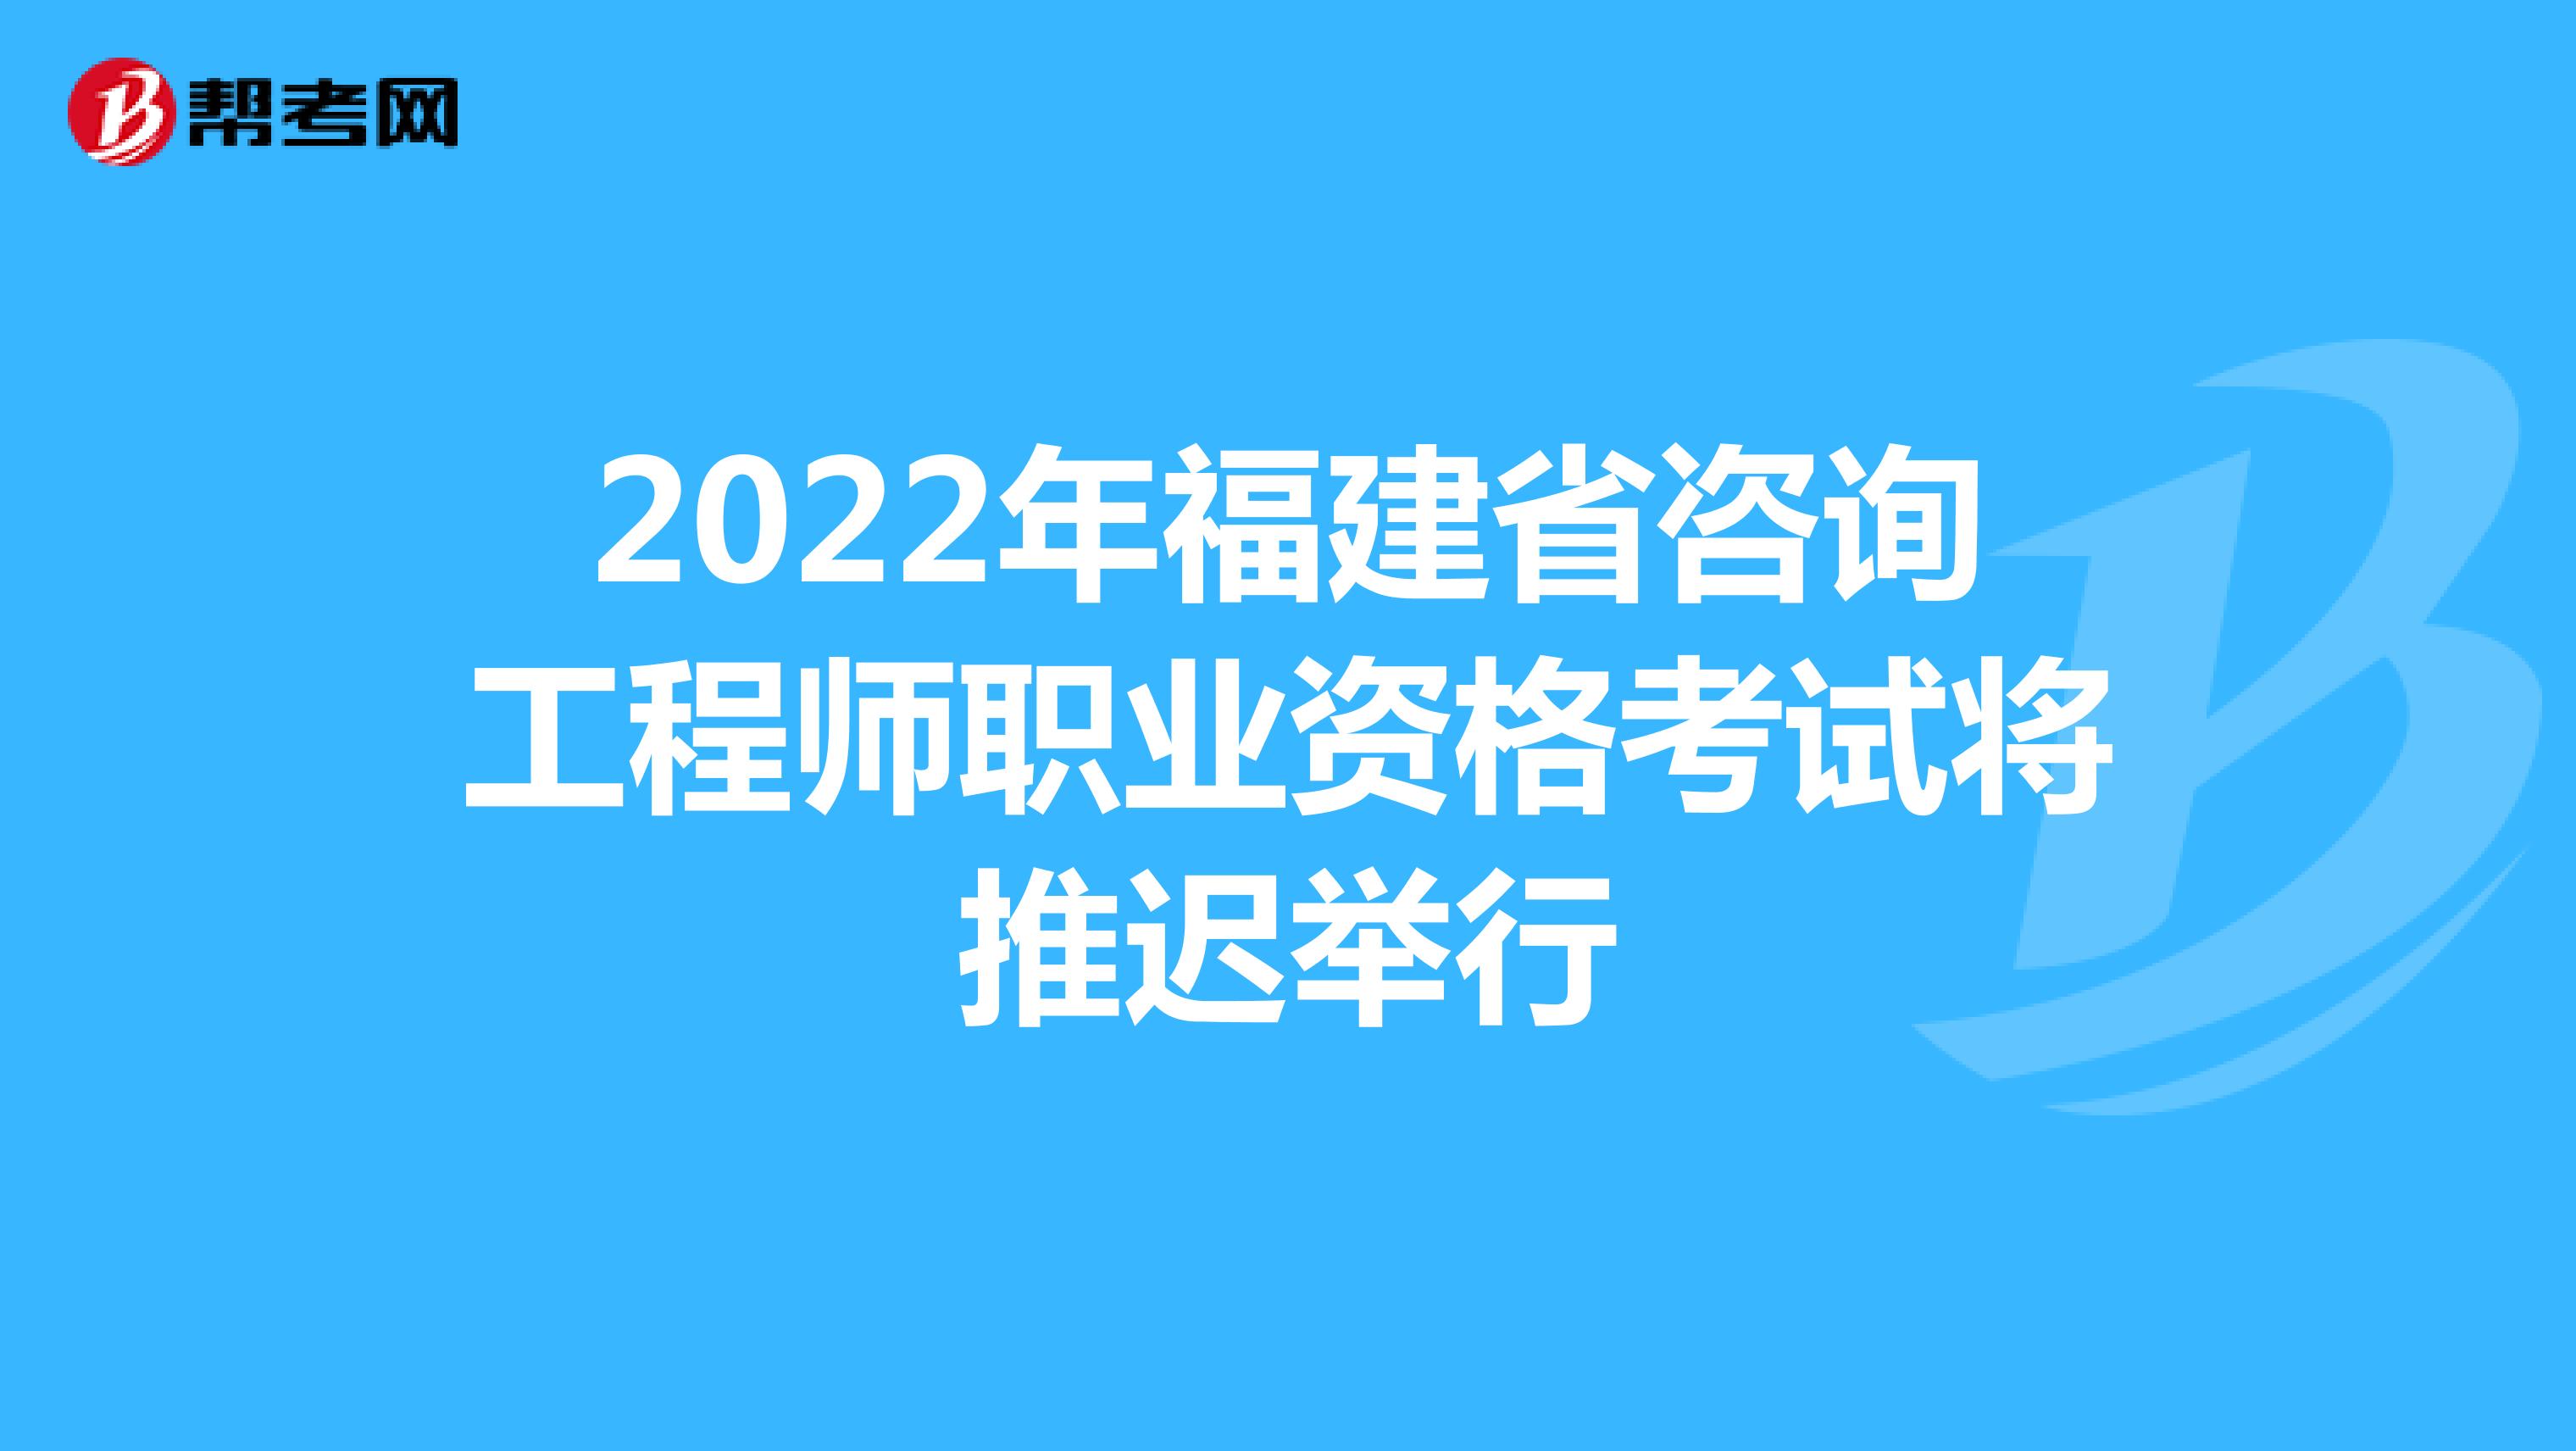 2022年福建省咨询工程师职业资格考试将推迟举行